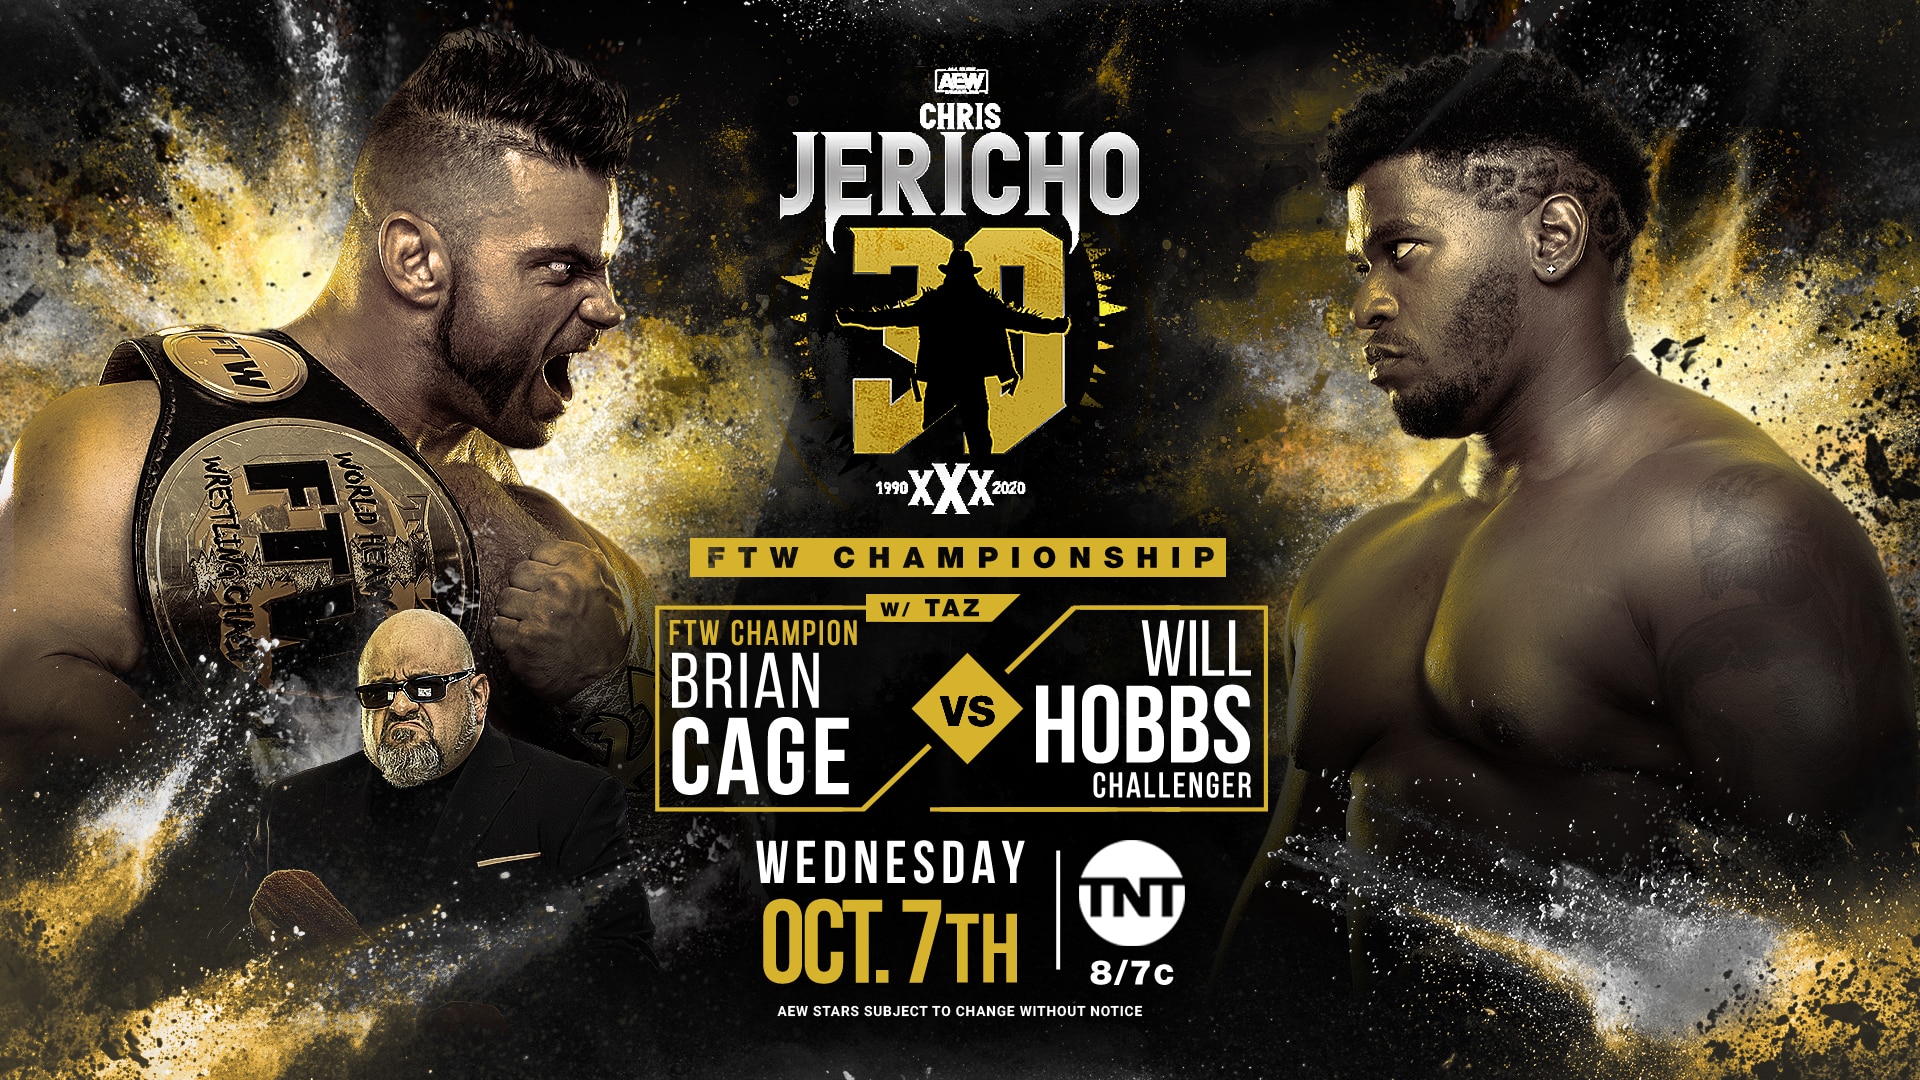 Cage vs Hobbs